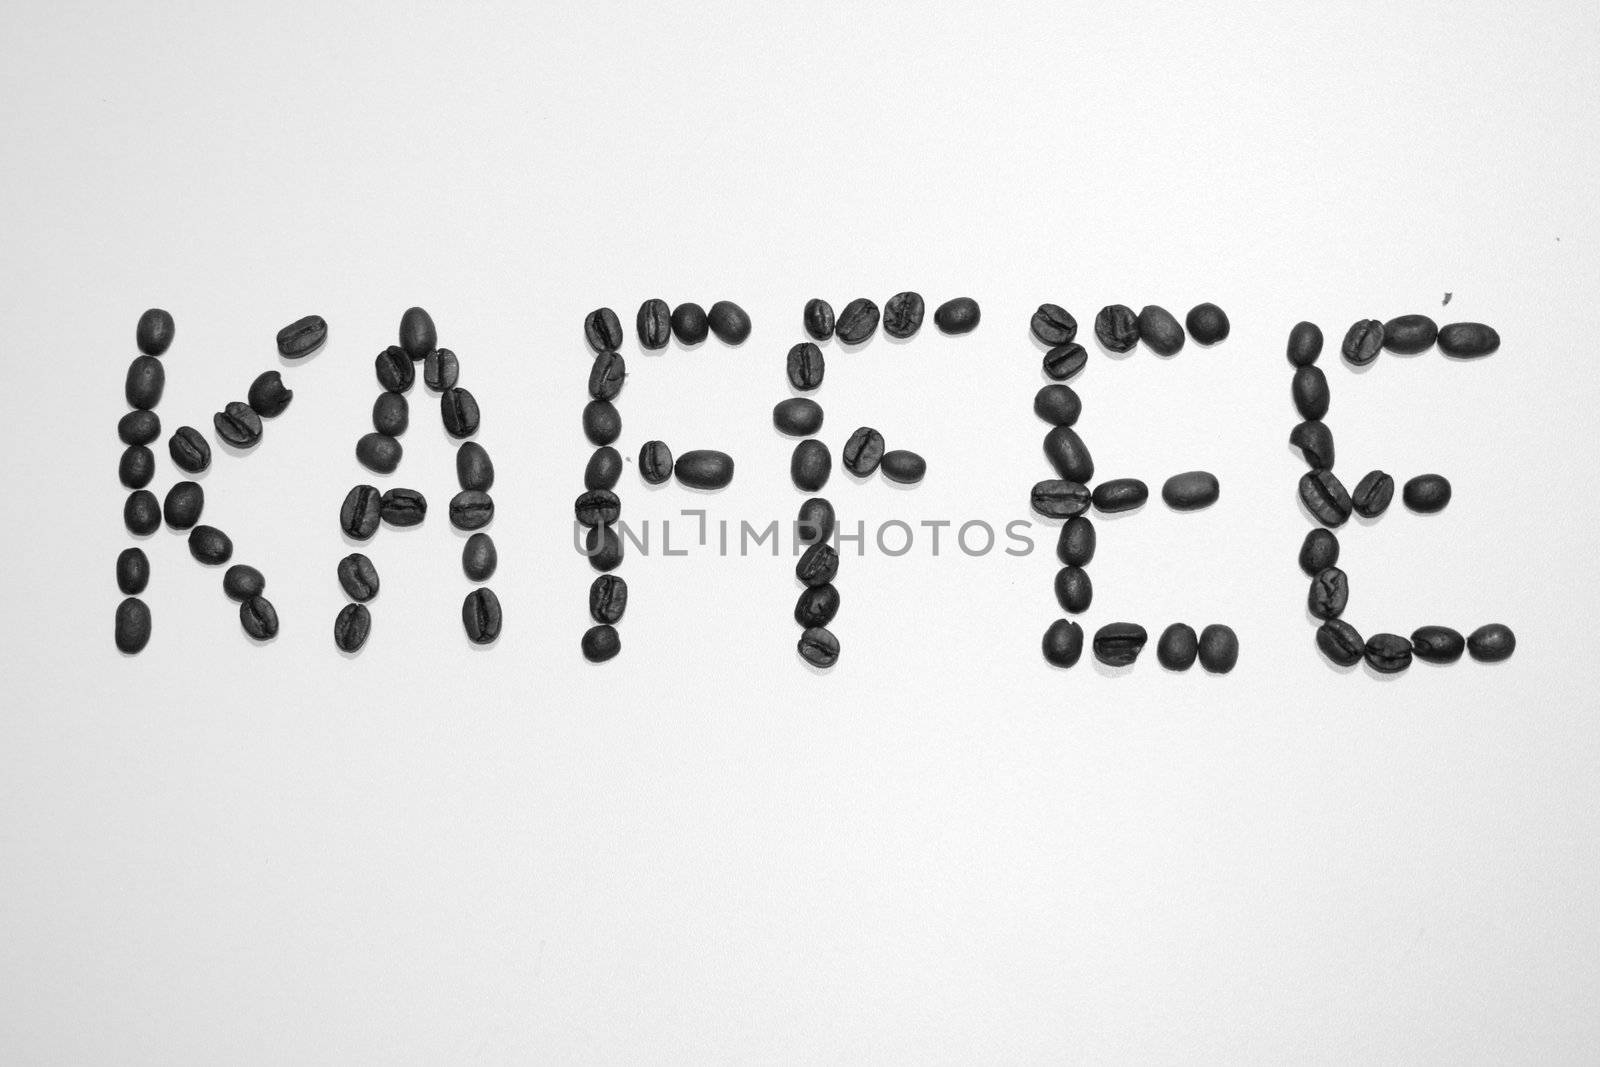 ein mit Kaffeebohnen geschriebenes Wort (Kaffee)	
a written word with coffee beans (coffee)